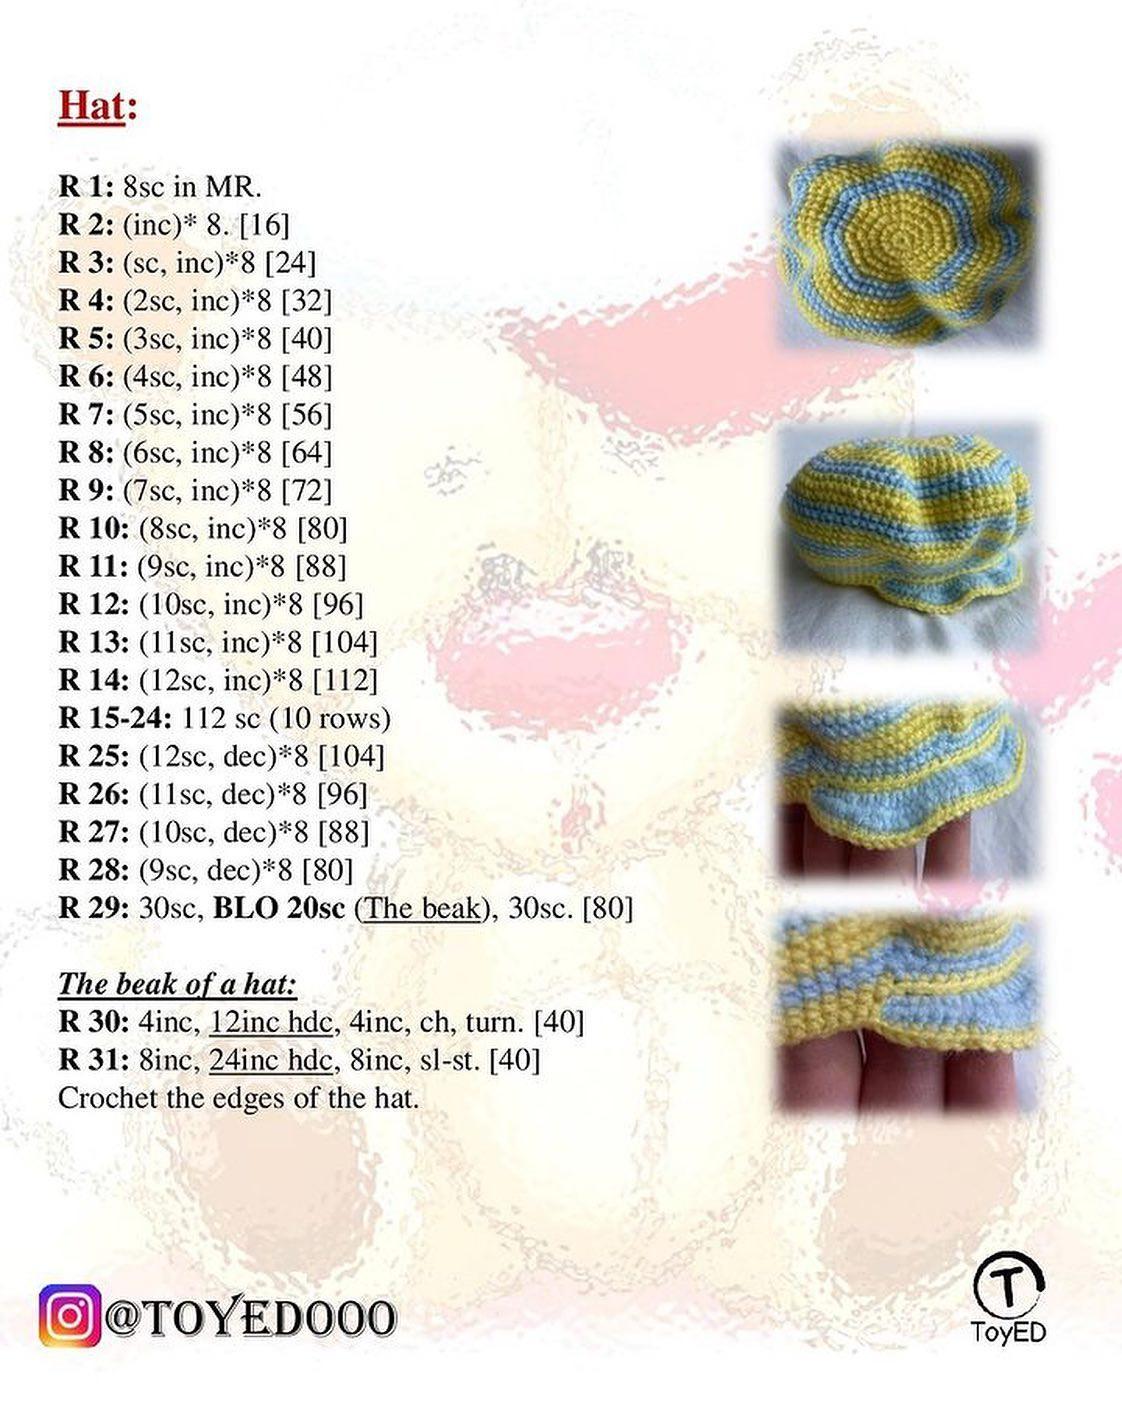 Crochet pattern of a brown bear wearing a hat